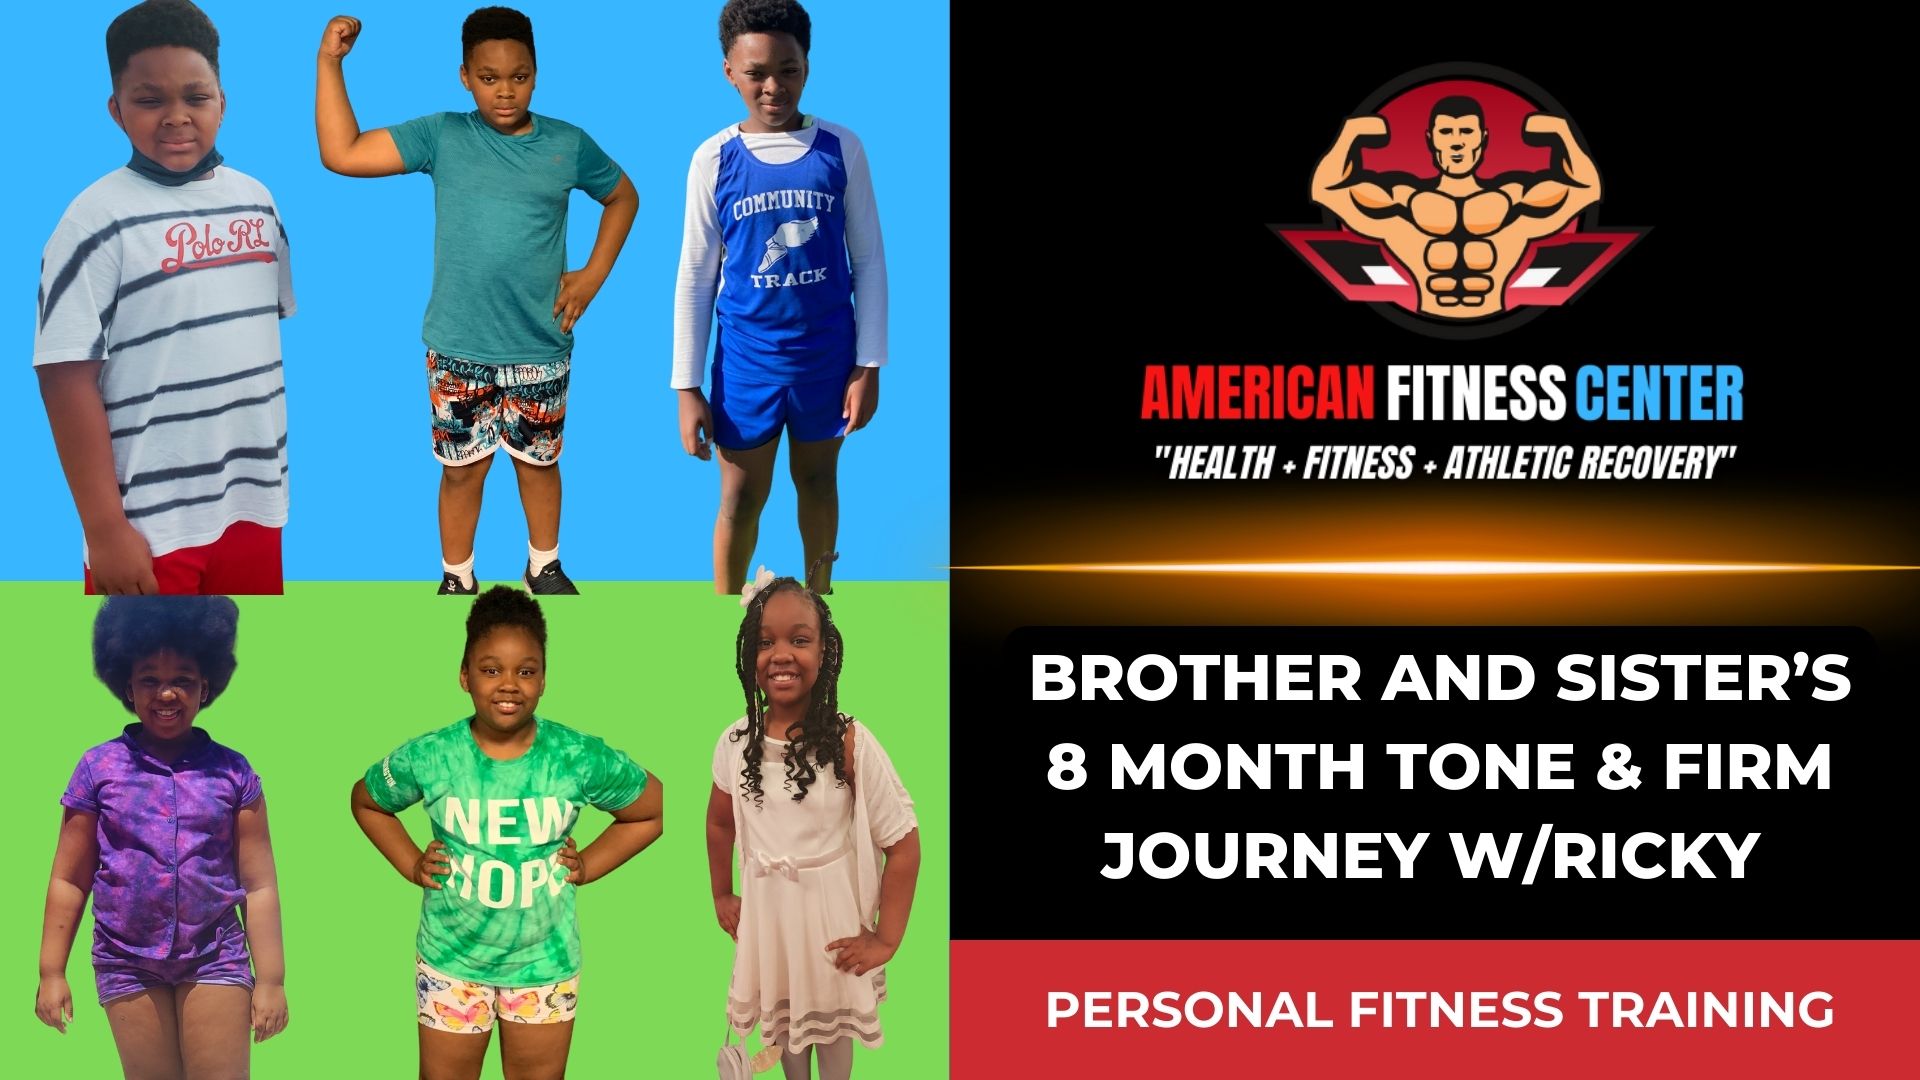 Elite-Personal-Fitness-Training-For-Kids-American-Fitness-Center-Fayetteville-GA